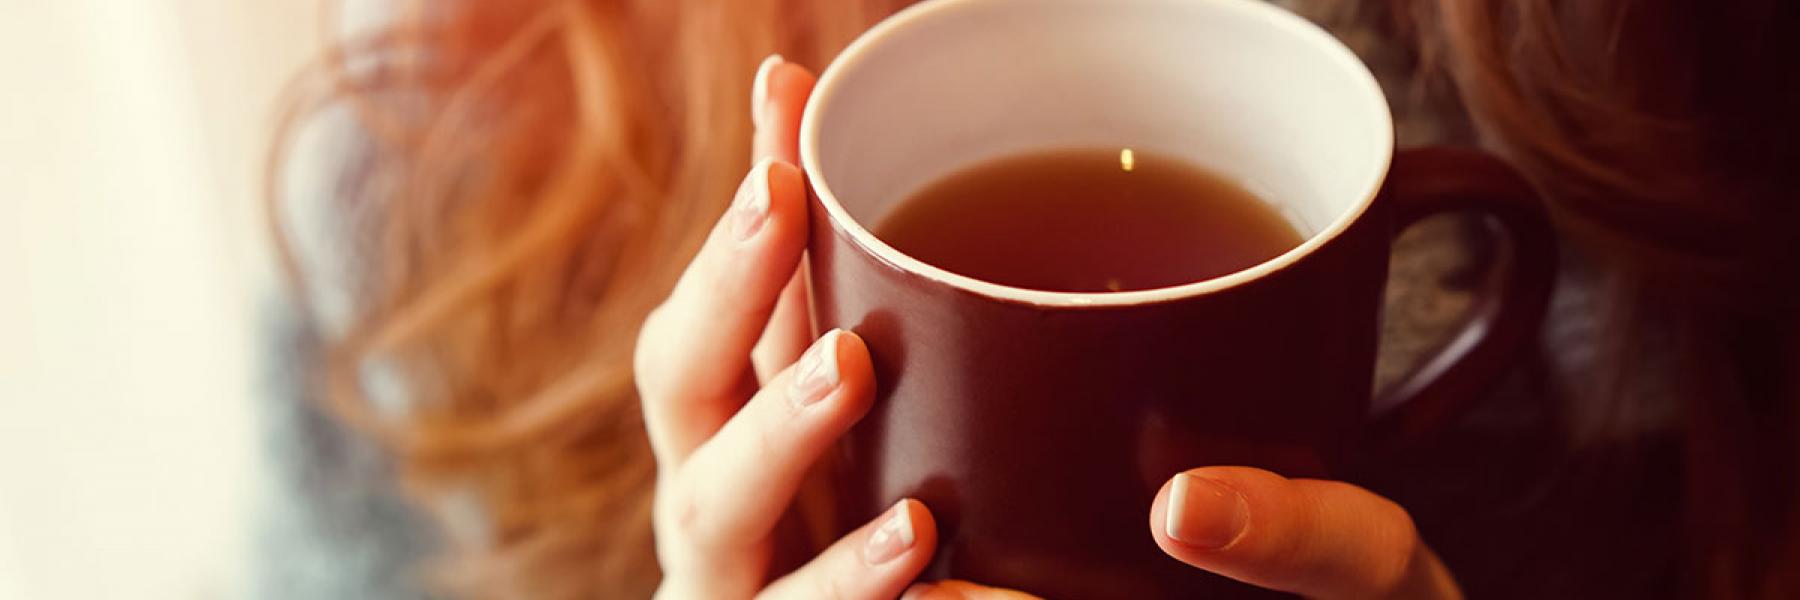 5 أخطاء تحول مشروبك المفضل (الشاي) لمشروب غير صحي